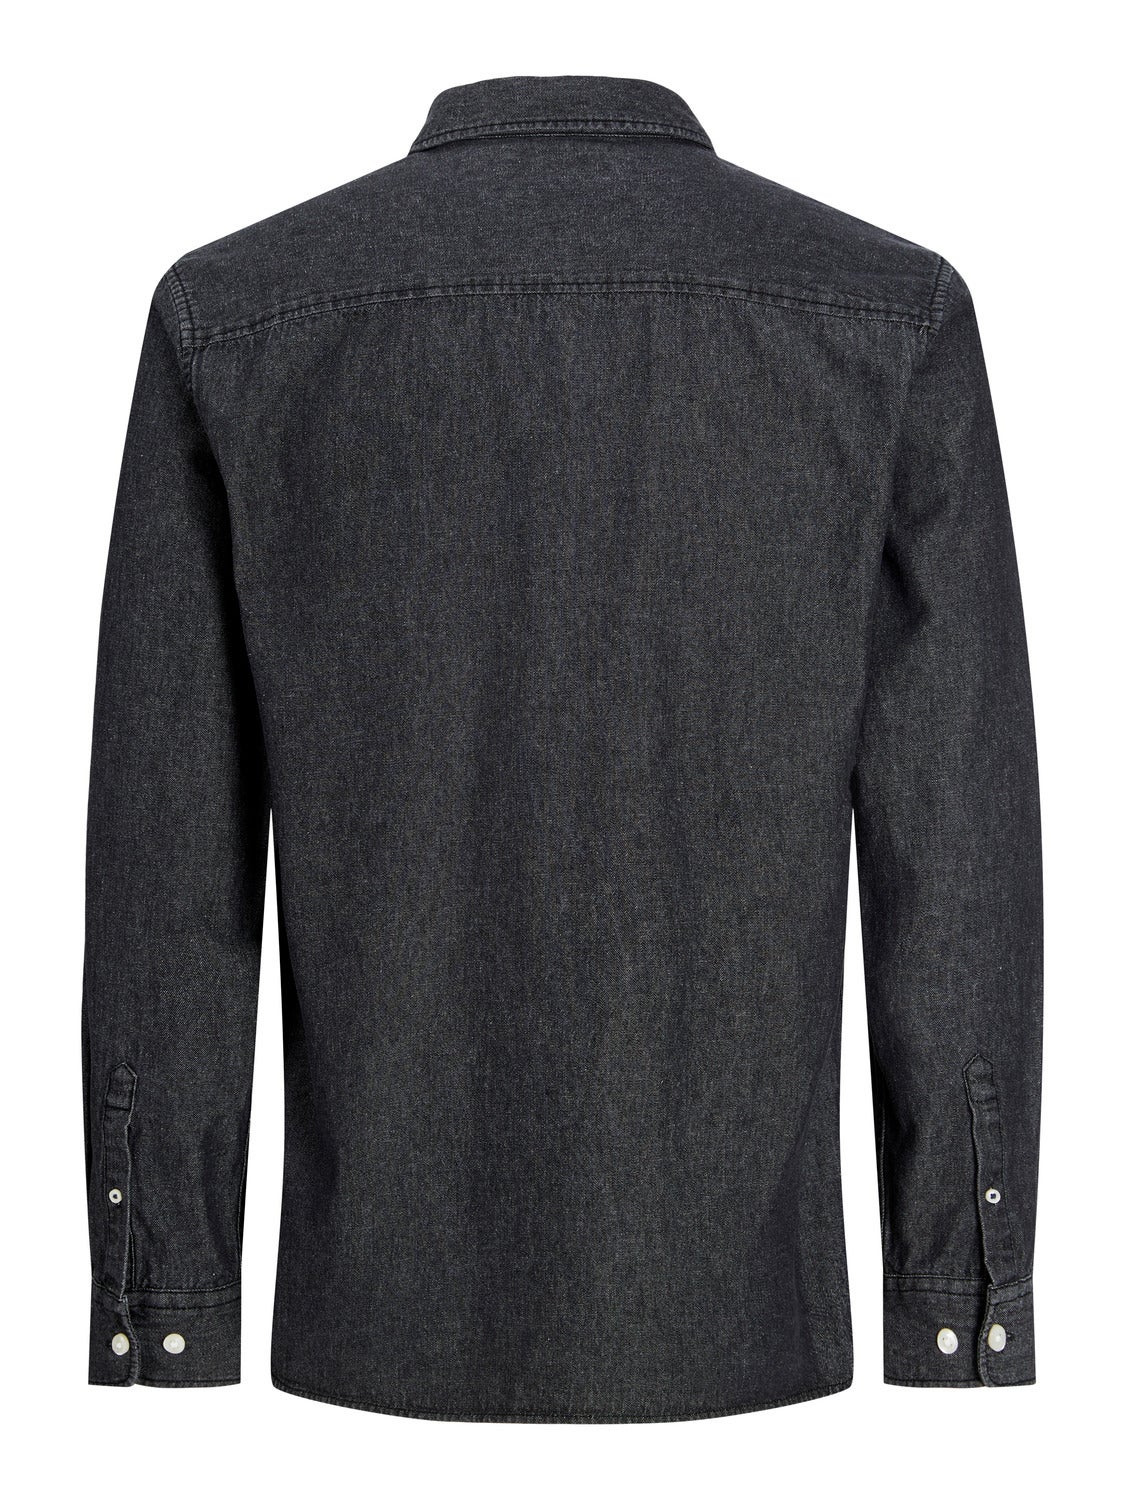 True Religion Men's Dark Rinse Button Up Denim Shirt Jacket - 103347 Size L  | eBay